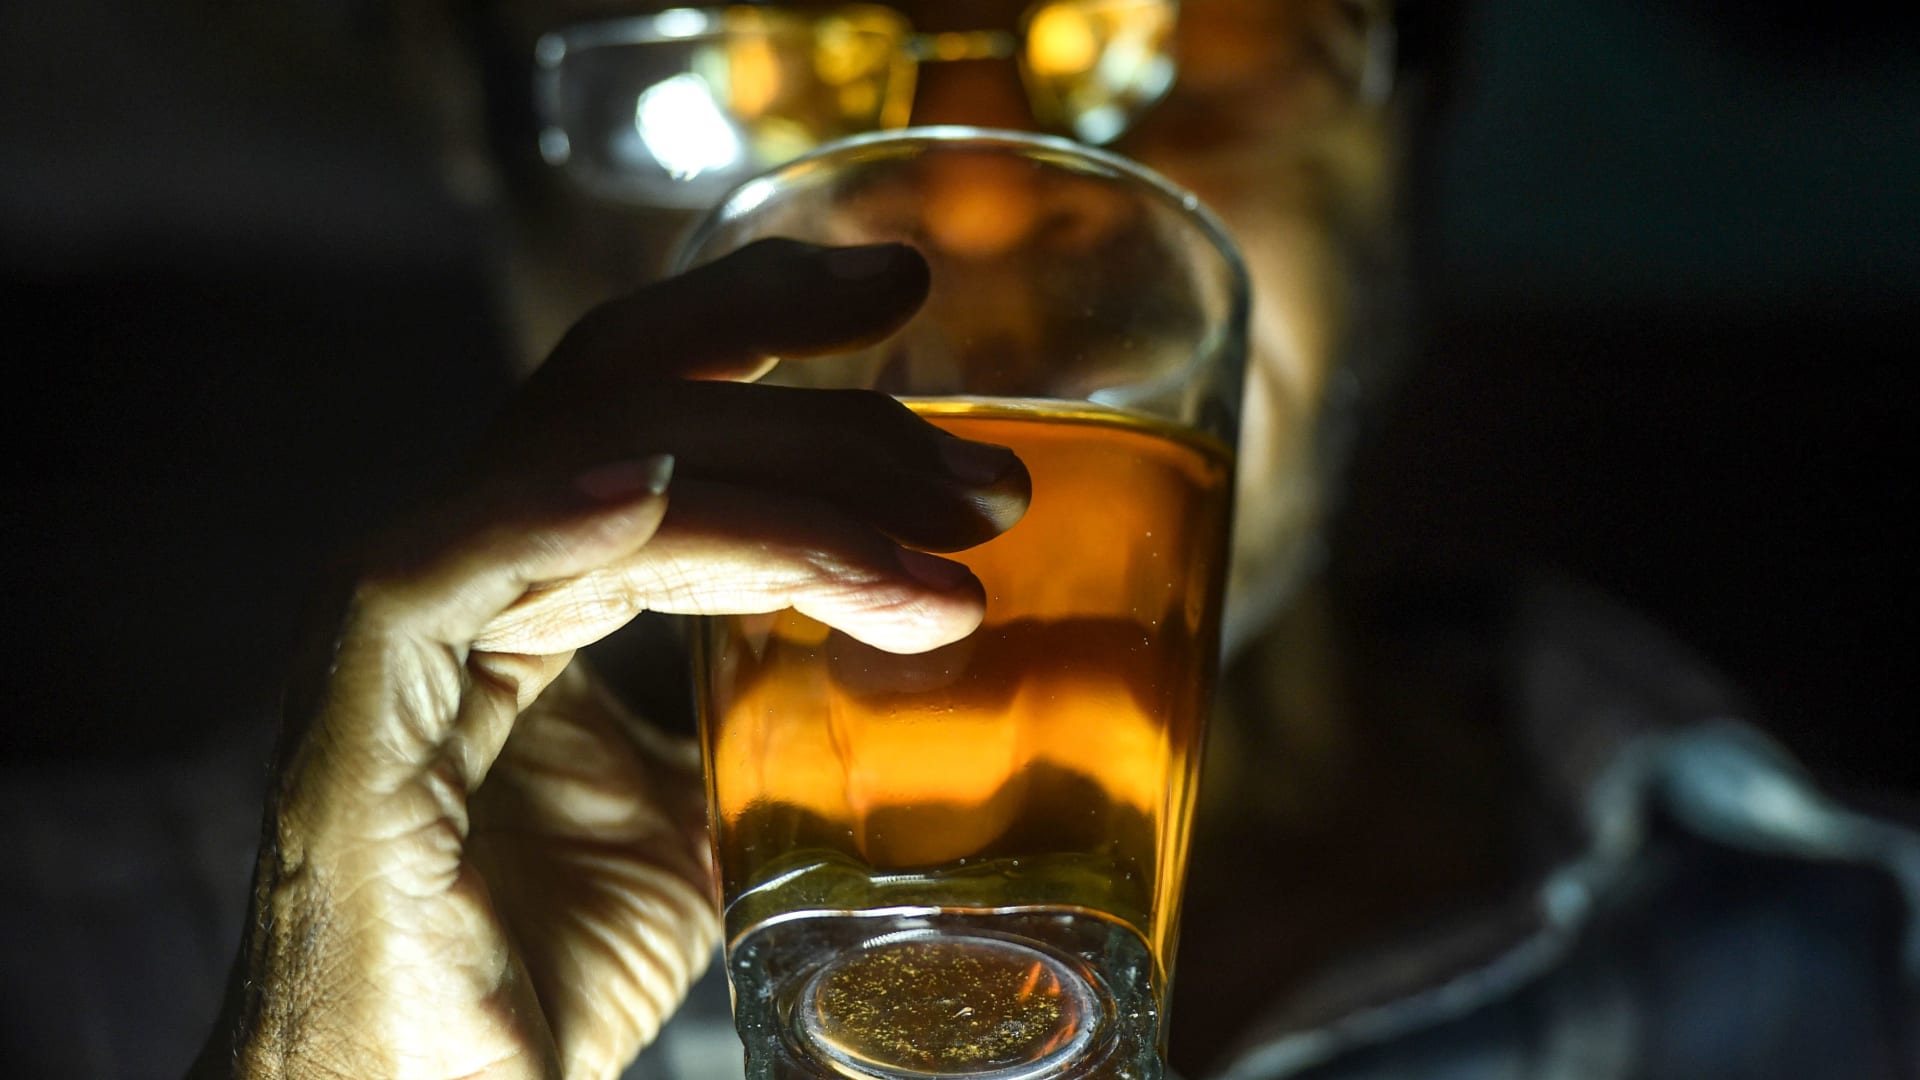 كيف تؤثر المشروبات الكحولية على الدماغ؟ دراسة تكشف الرابط بينهما